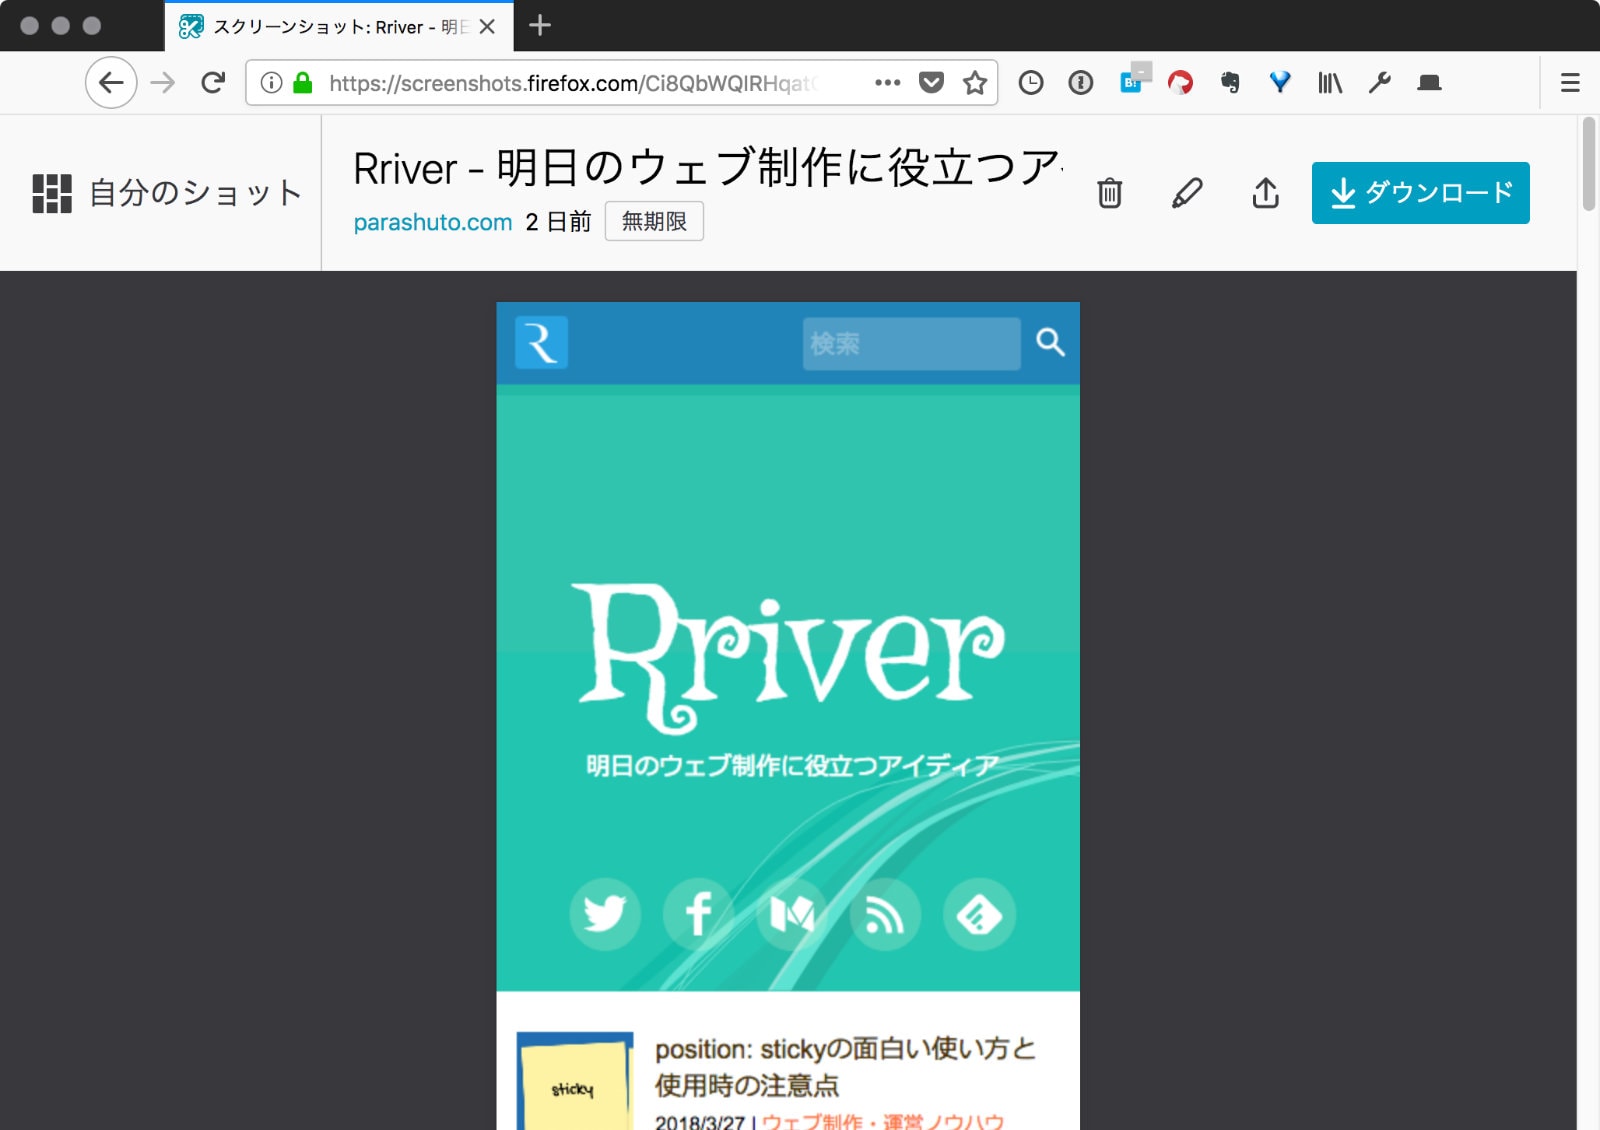 Firefox Screenshotsの「自分のショット」画面でアイテムを選んだ状態